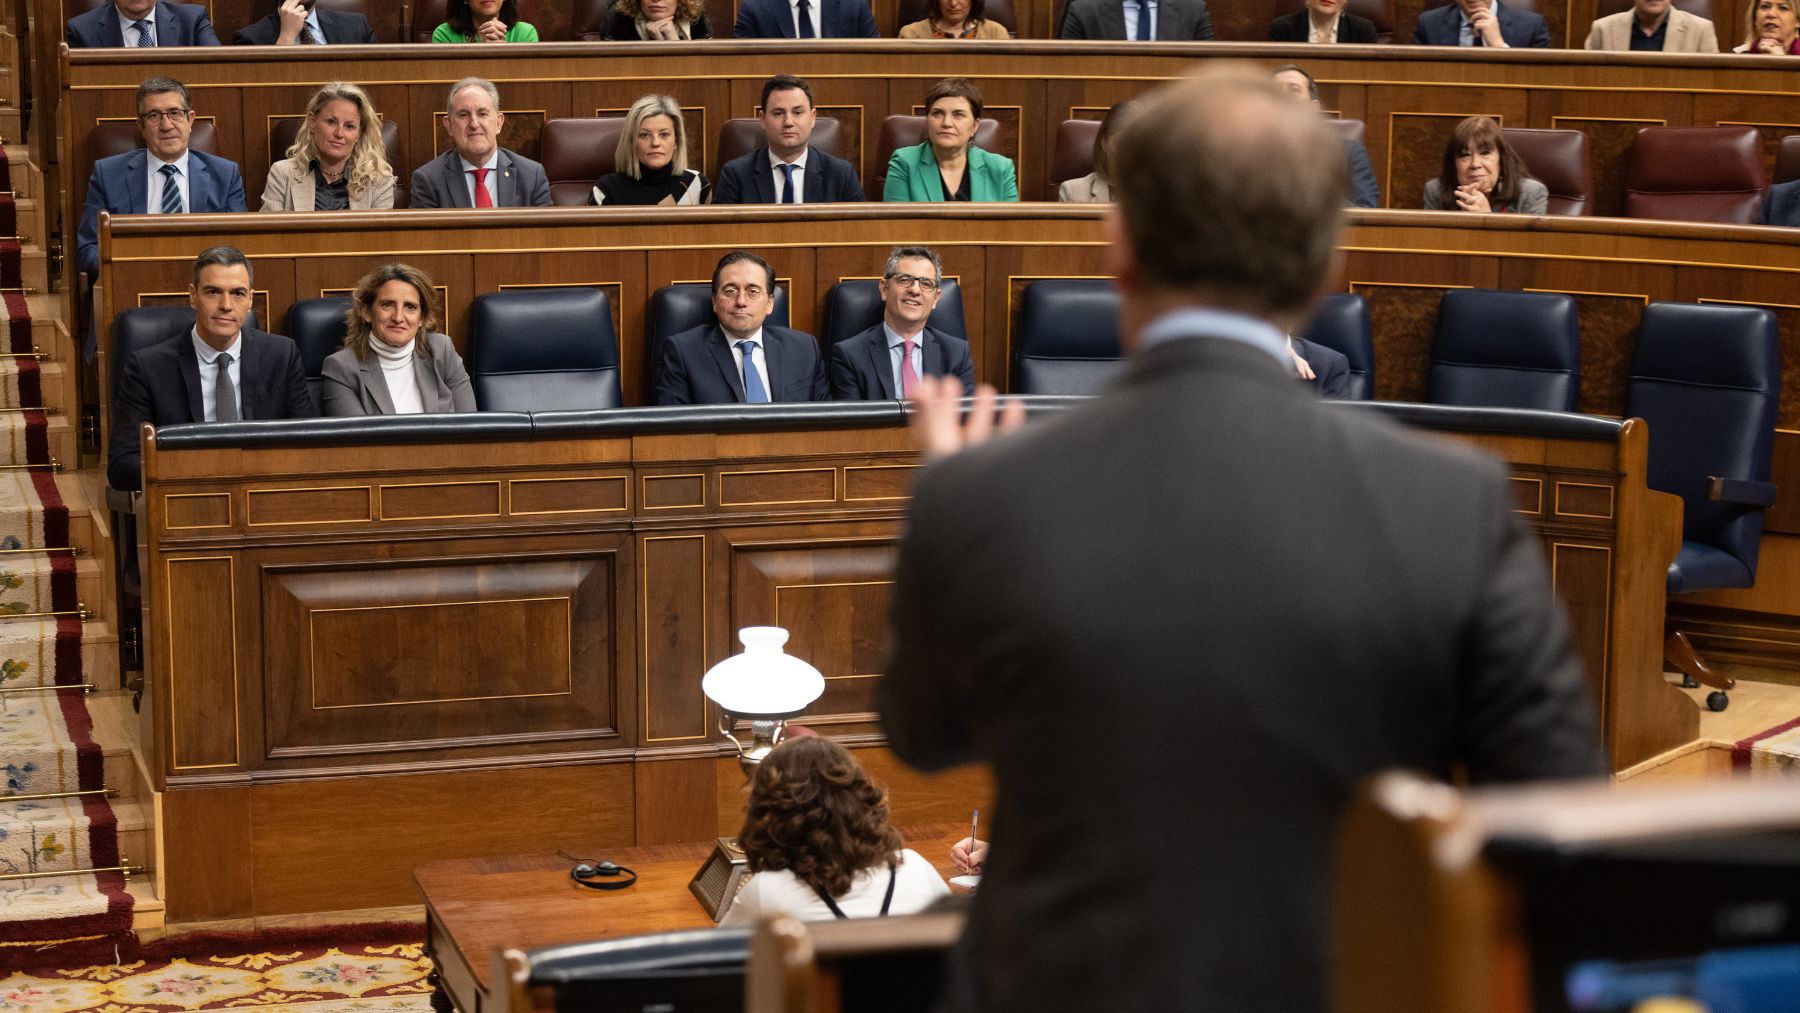 Feijóo interviene en el Congreso ante el Grupo Socialista. (Foto: EP)